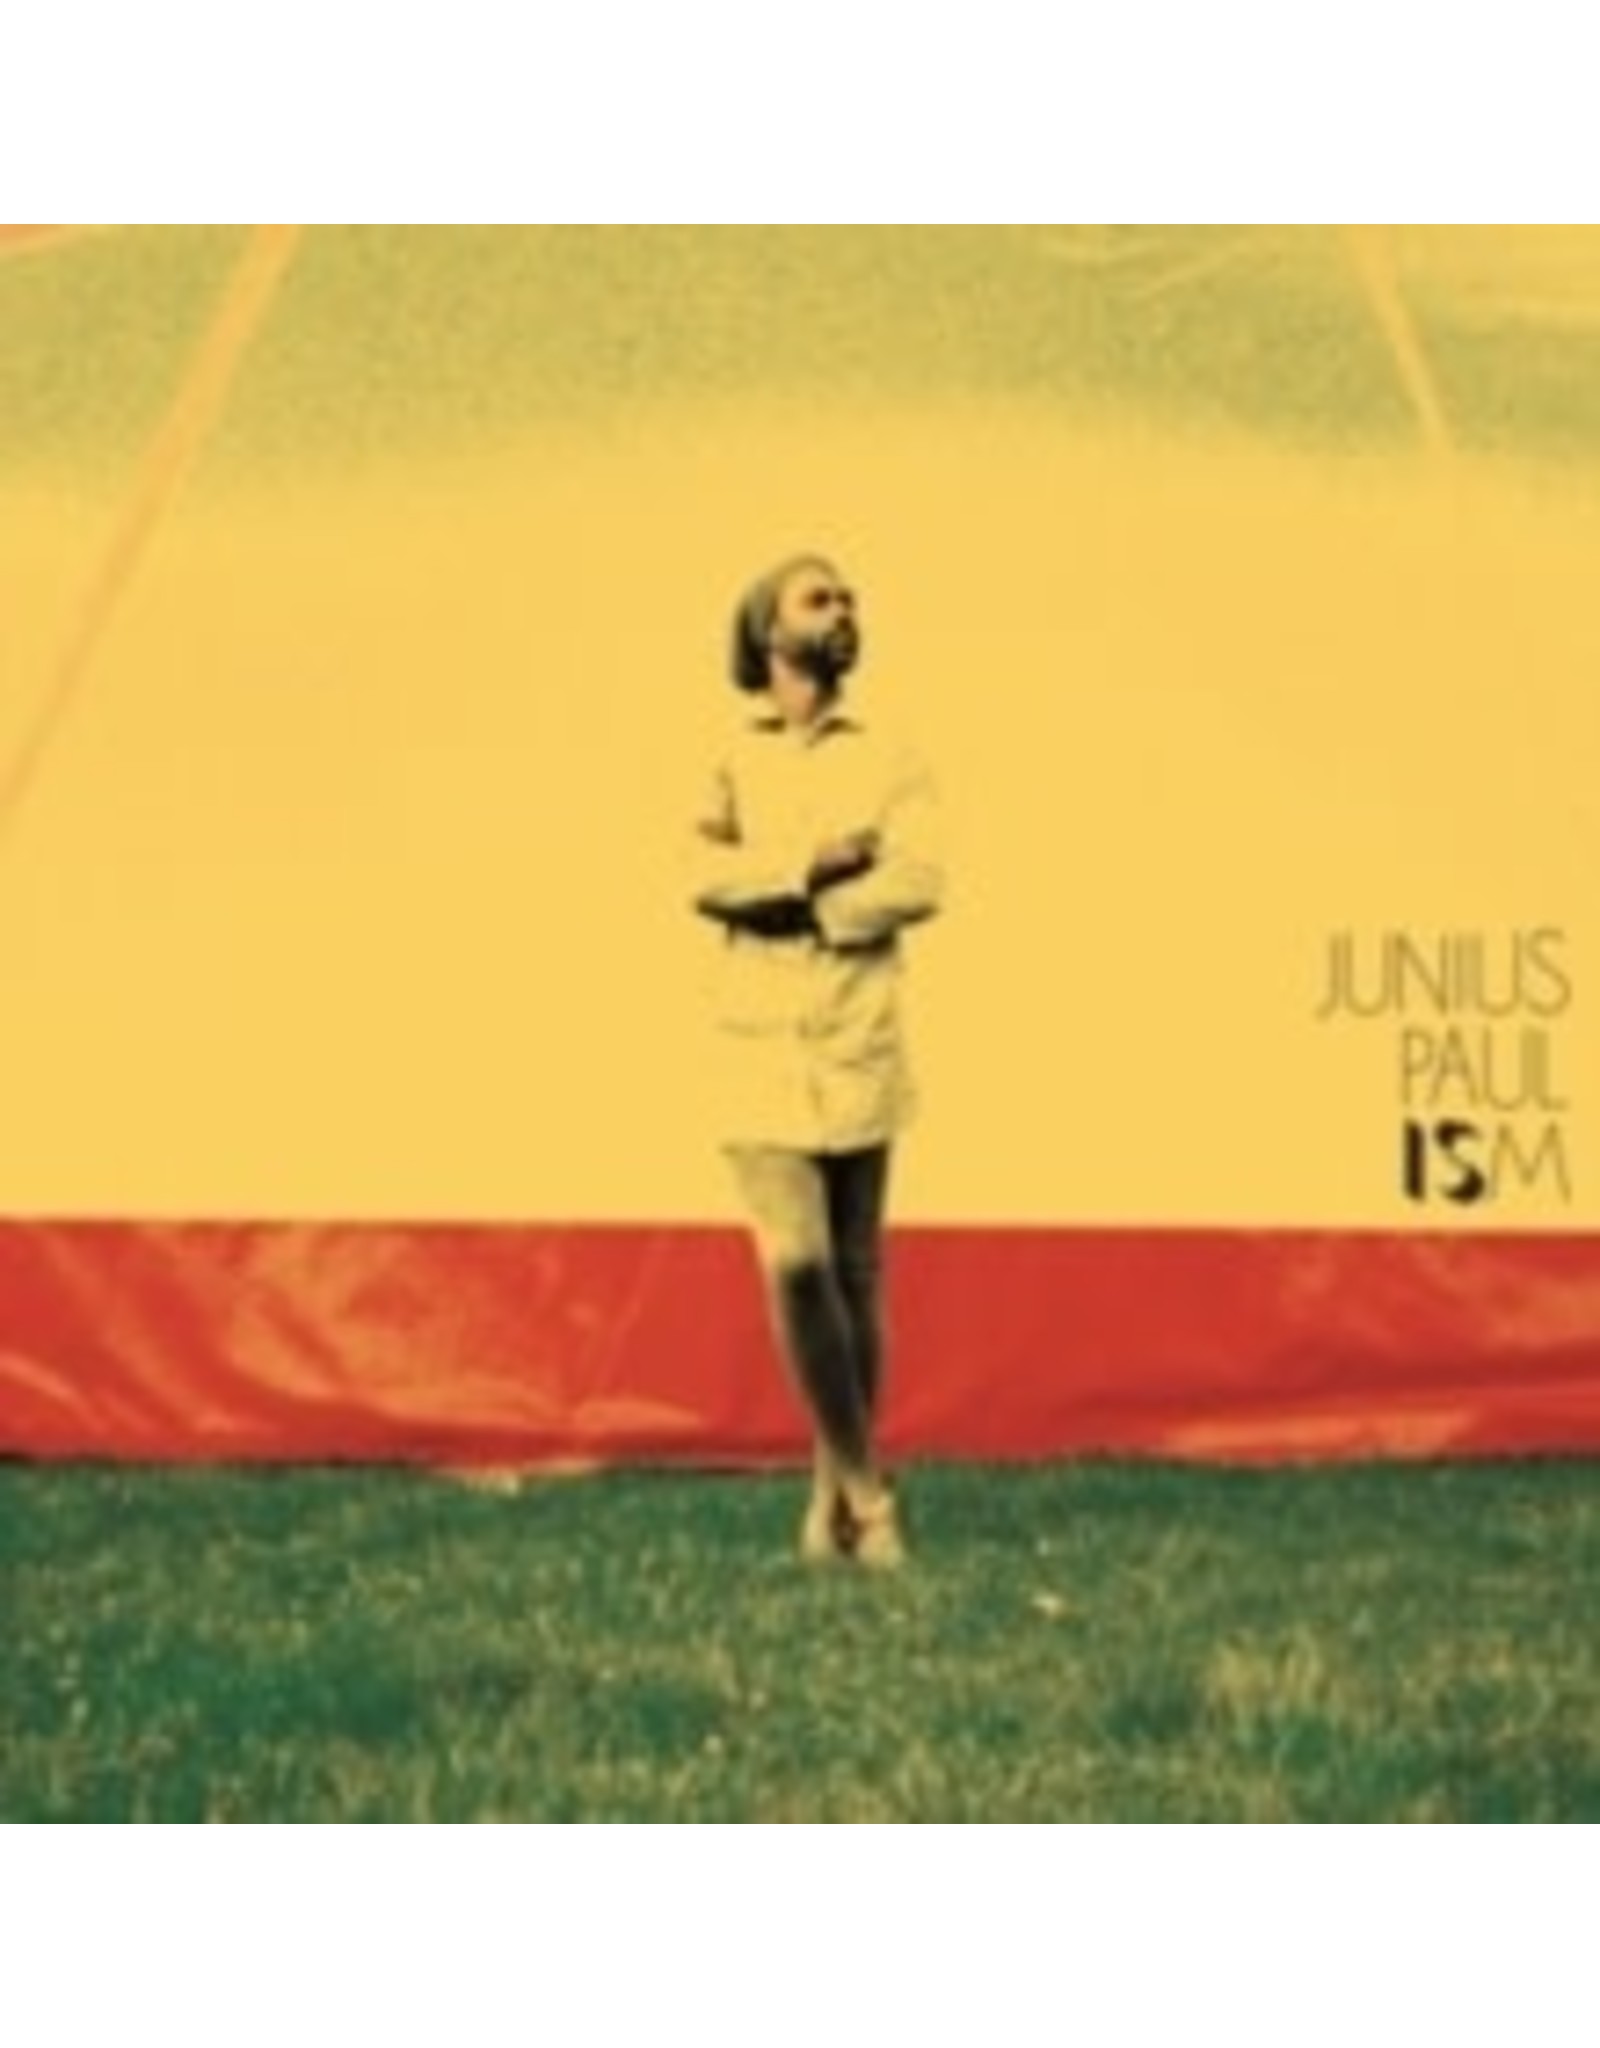 New Vinyl Junius Paul - Ism LP